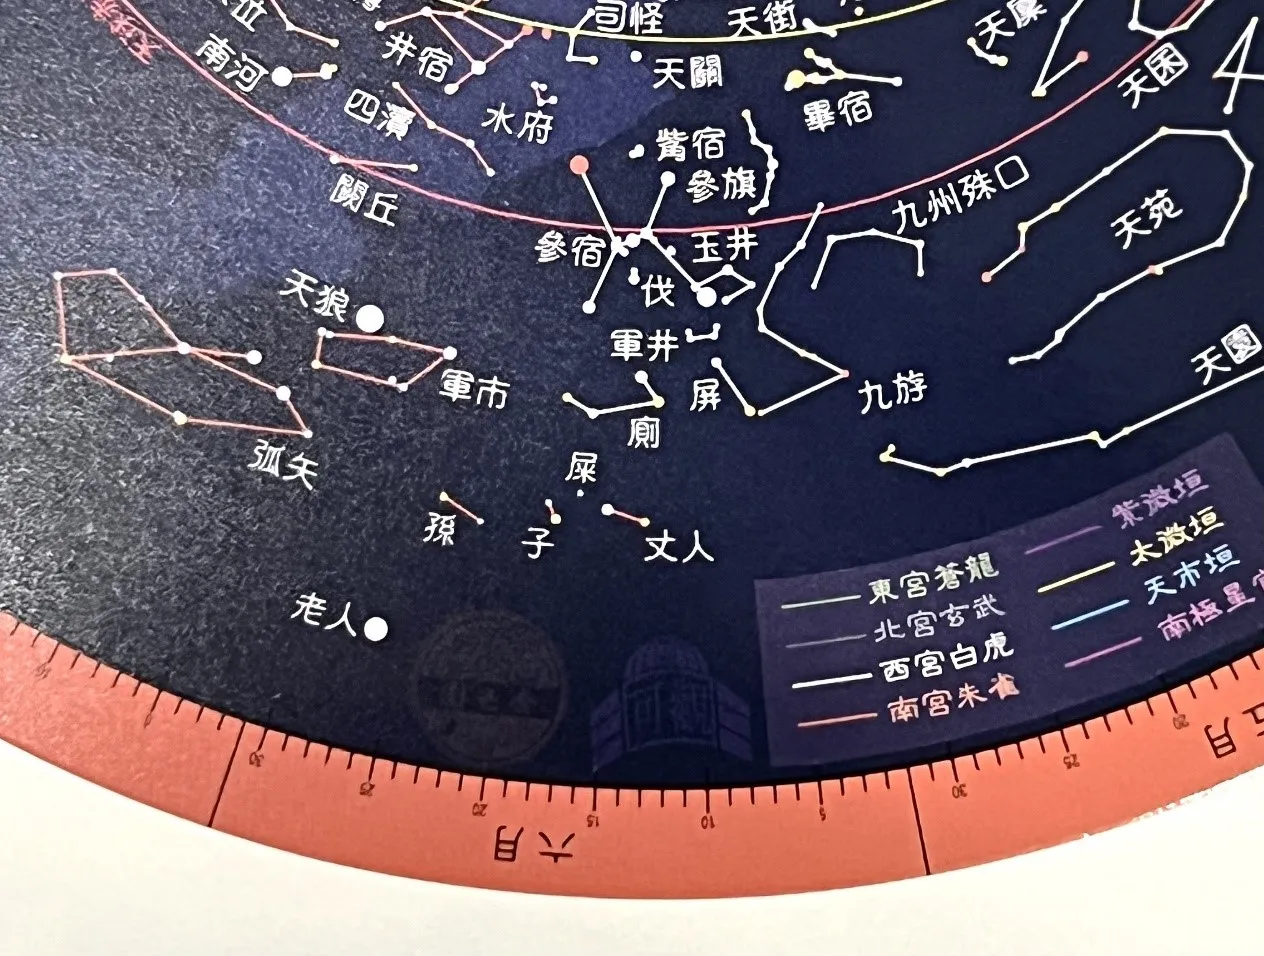 可观中心的中国星图，局部放大。